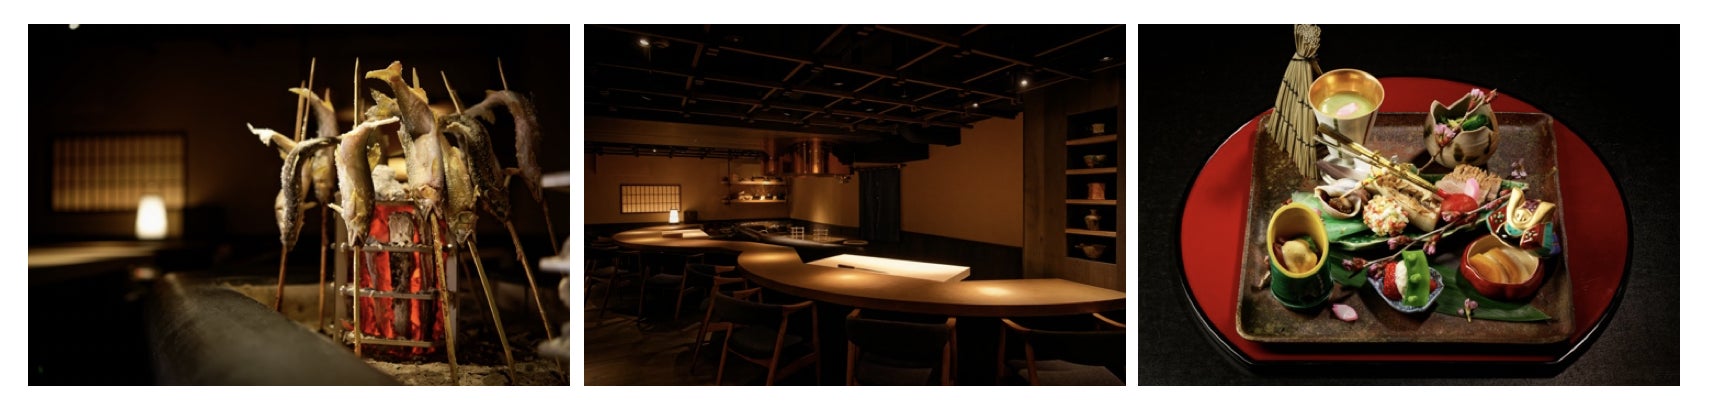 東京・大阪に飲食店を展開する「一石三鳥グループ」から、料理と世界観でタイムスリップに誘う「江戸料理 一石三鳥」が7月11日（火）、東京・西麻布に開店。